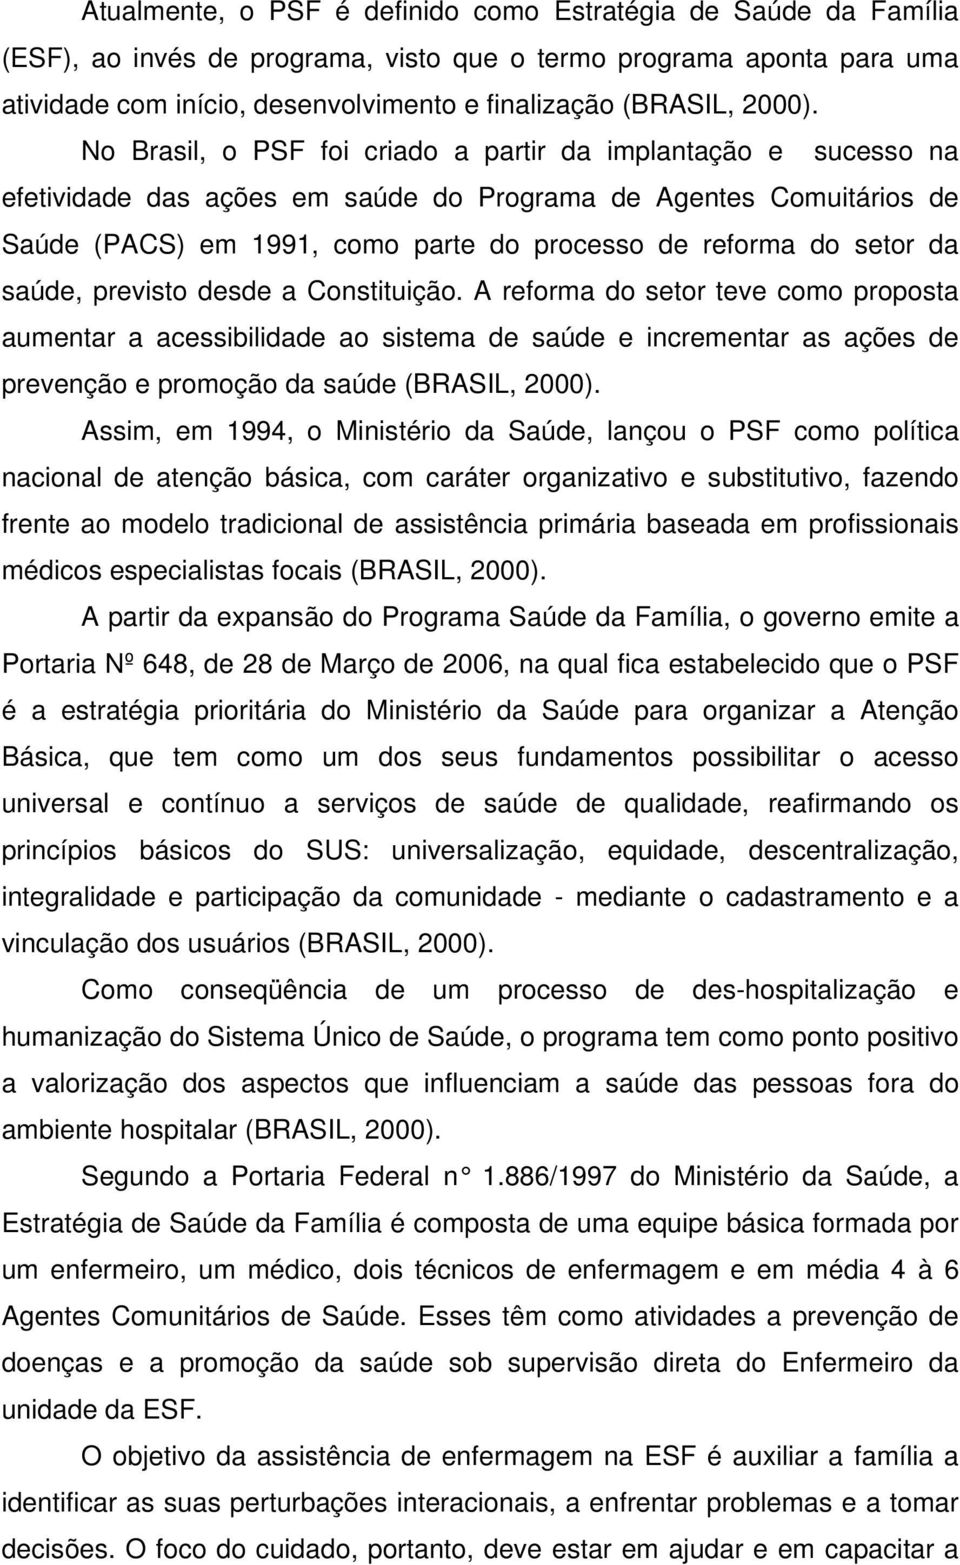 No Brasil, o PSF foi criado a partir da implantação e sucesso na efetividade das ações em saúde do Programa de Agentes Comuitários de Saúde (PACS) em 1991, como parte do processo de reforma do setor